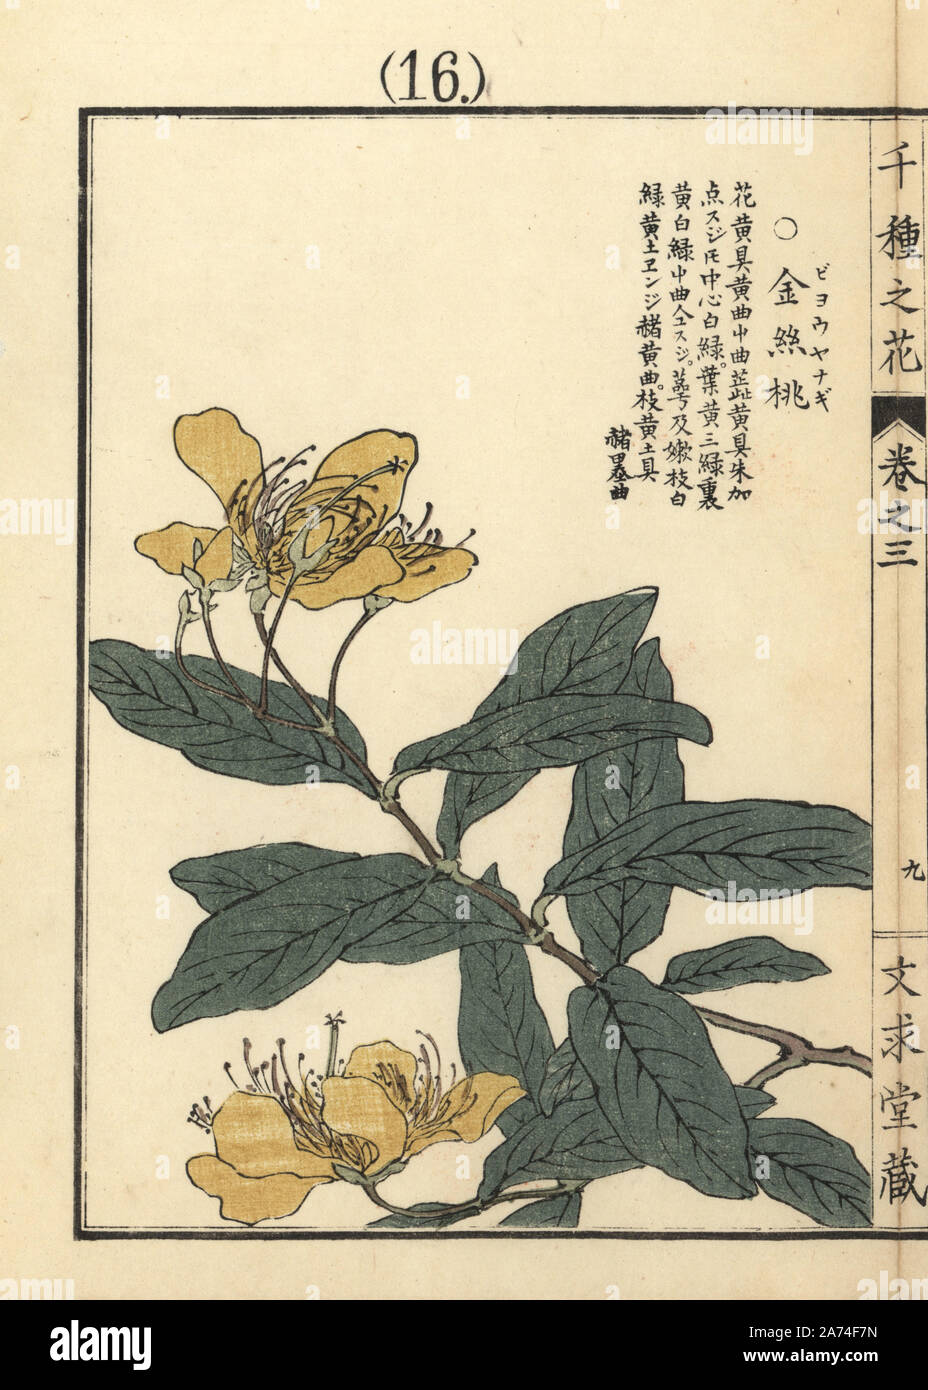 Byouyanagi or Chinese St. John's wort, Hypericum monogynum. Handcoloured woodblock print by Kono Bairei from Senshu no Hana (One Thousand Varieties of Flowers), Bunkyudo, Kyoto, 1889. Stock Photo